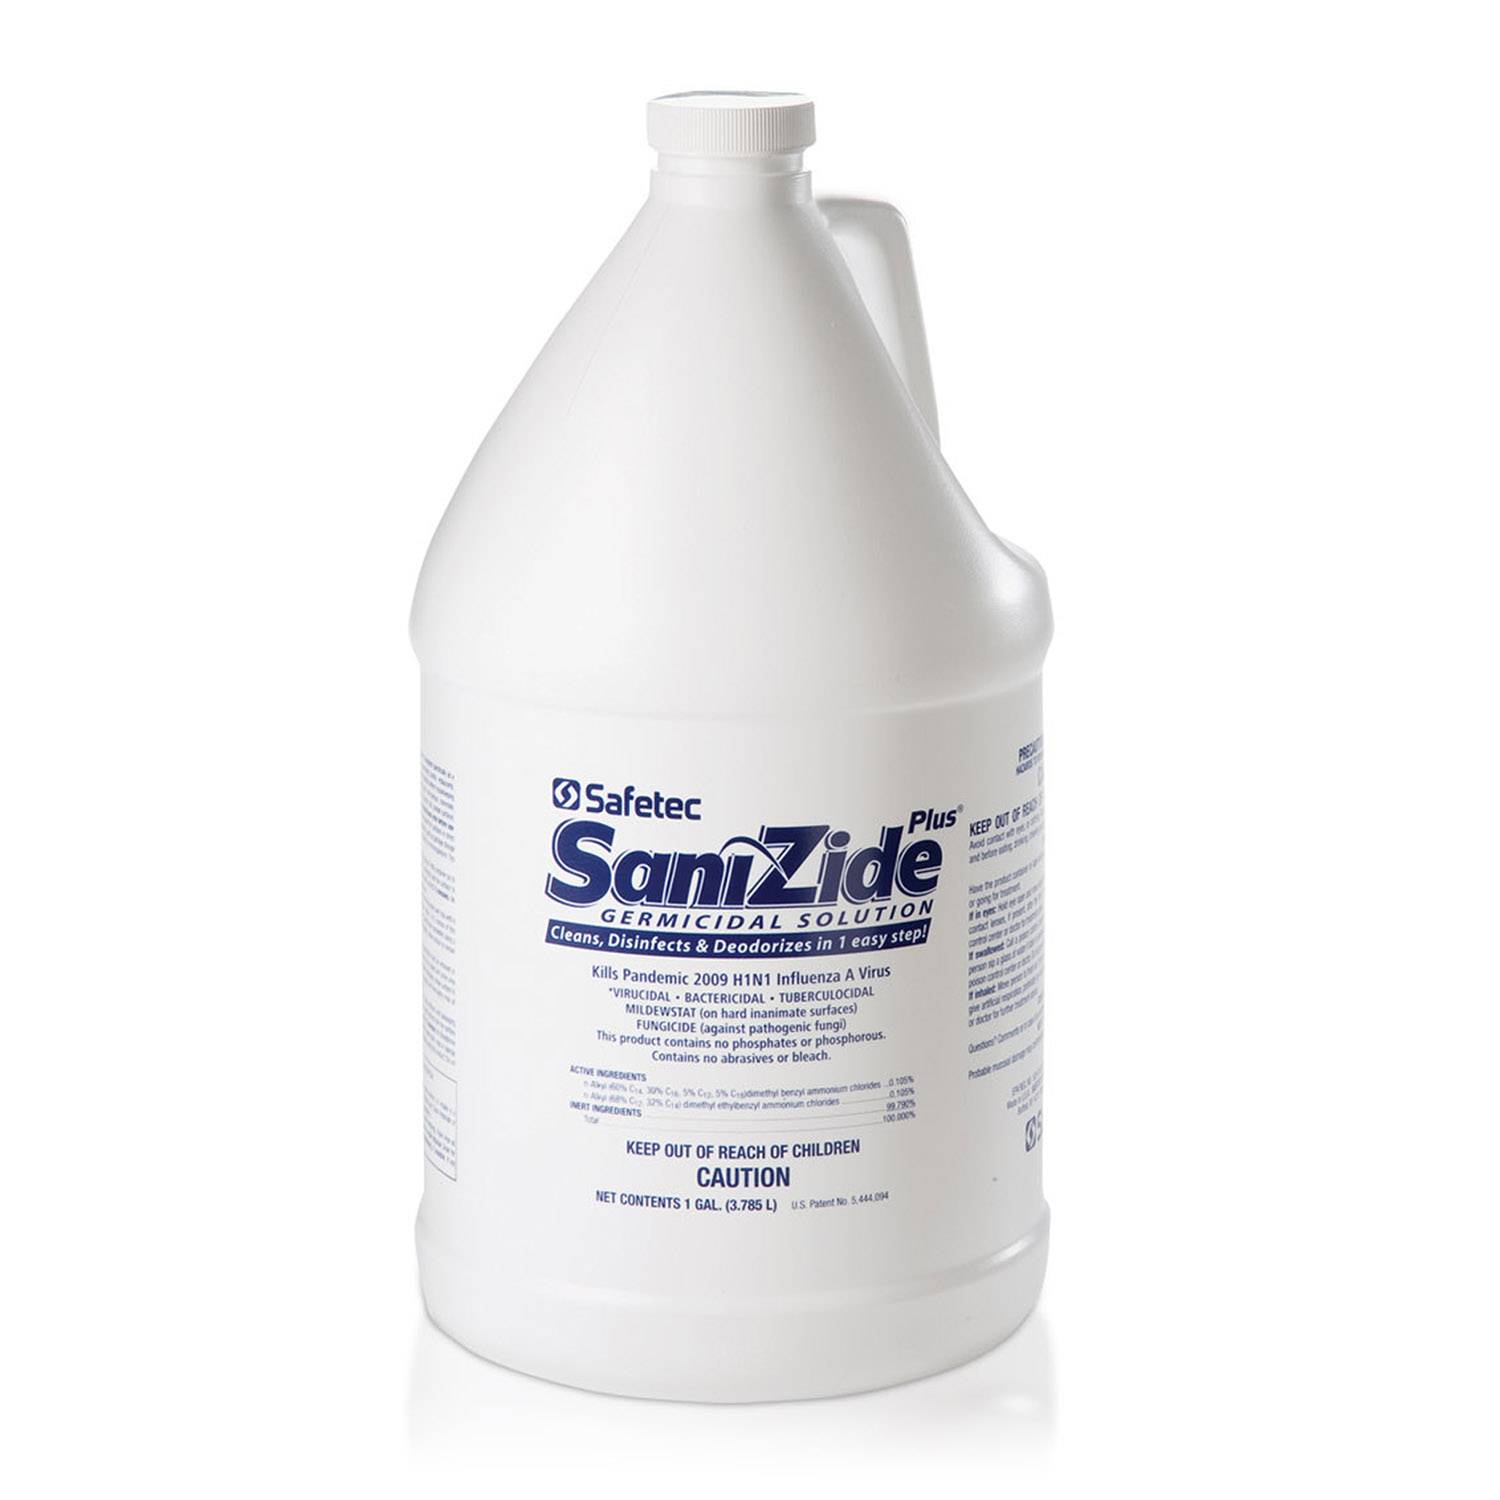 Safetec SaniZide Plus Disinfectant One Gallon Bottle